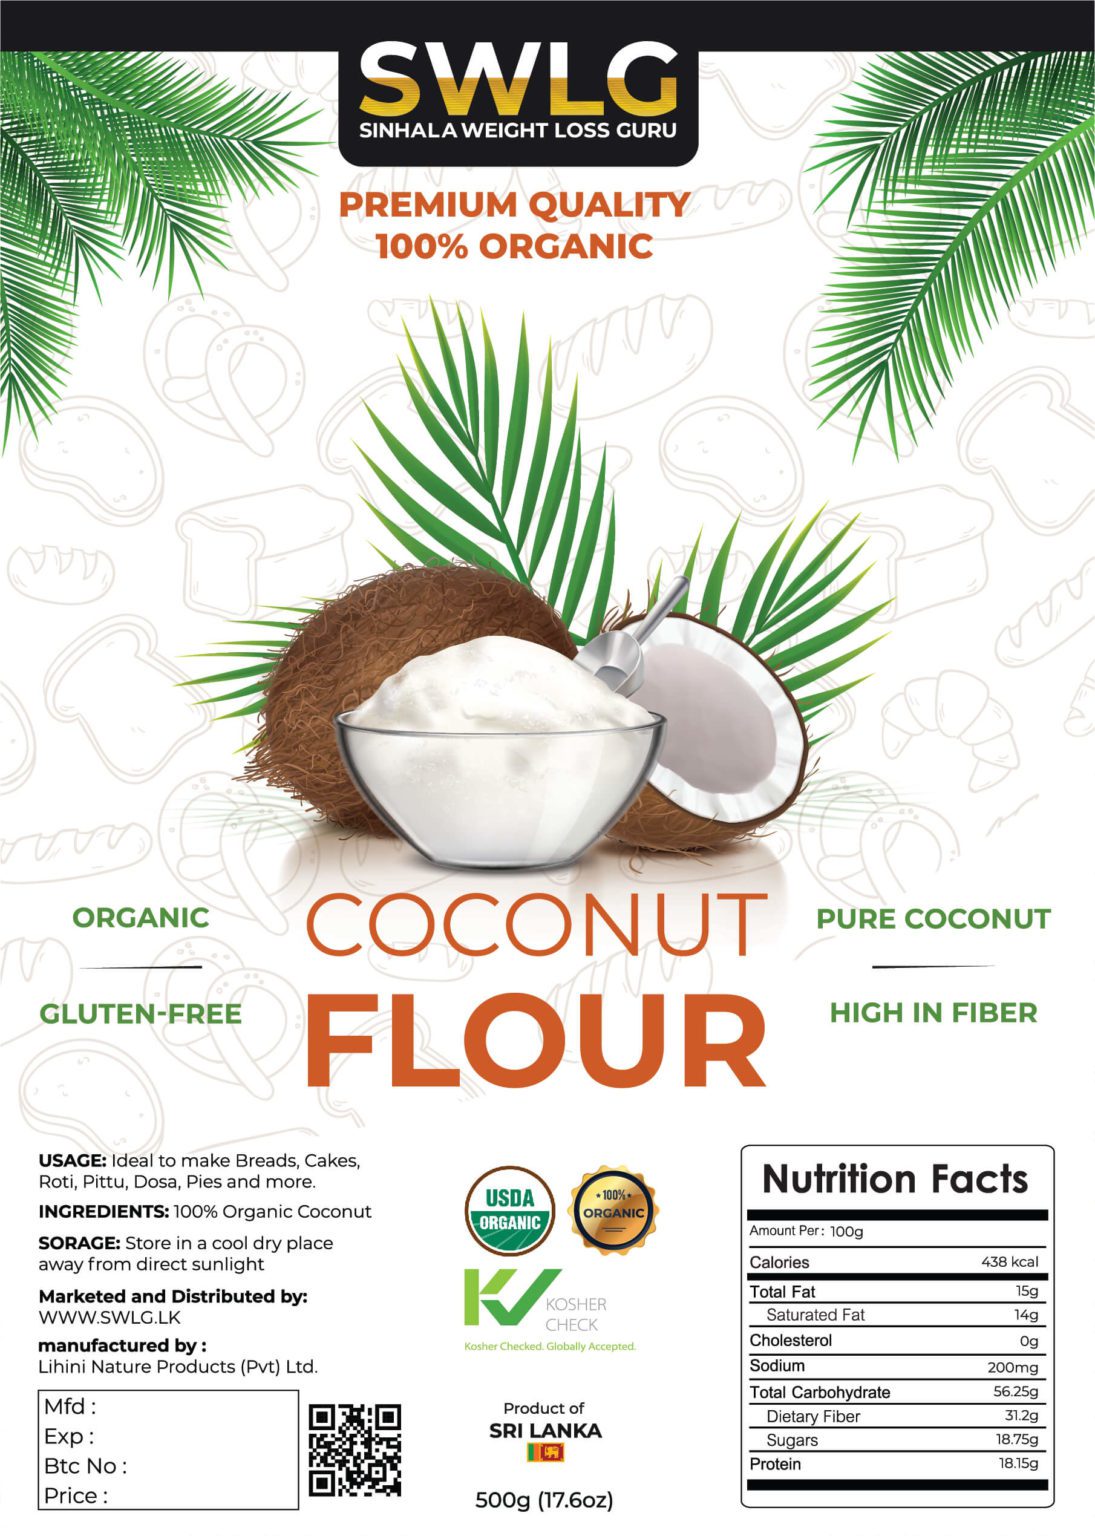 SWLG Coconut flour